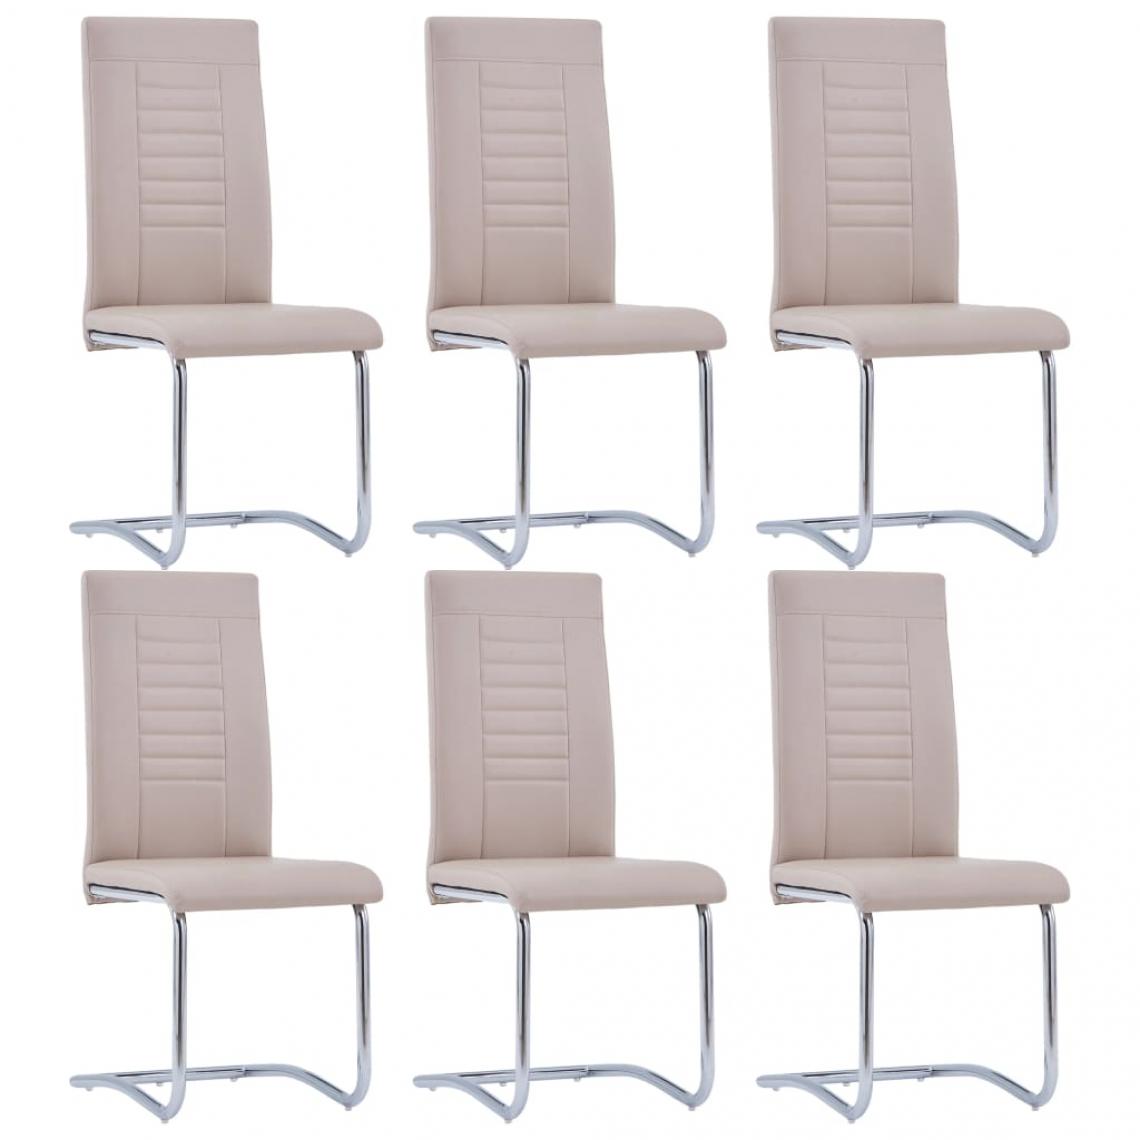 Decoshop26 - Lot de 6 chaises de salle à manger cuisine cantilever design moderne similicuir cappuccino CDS022260 - Chaises